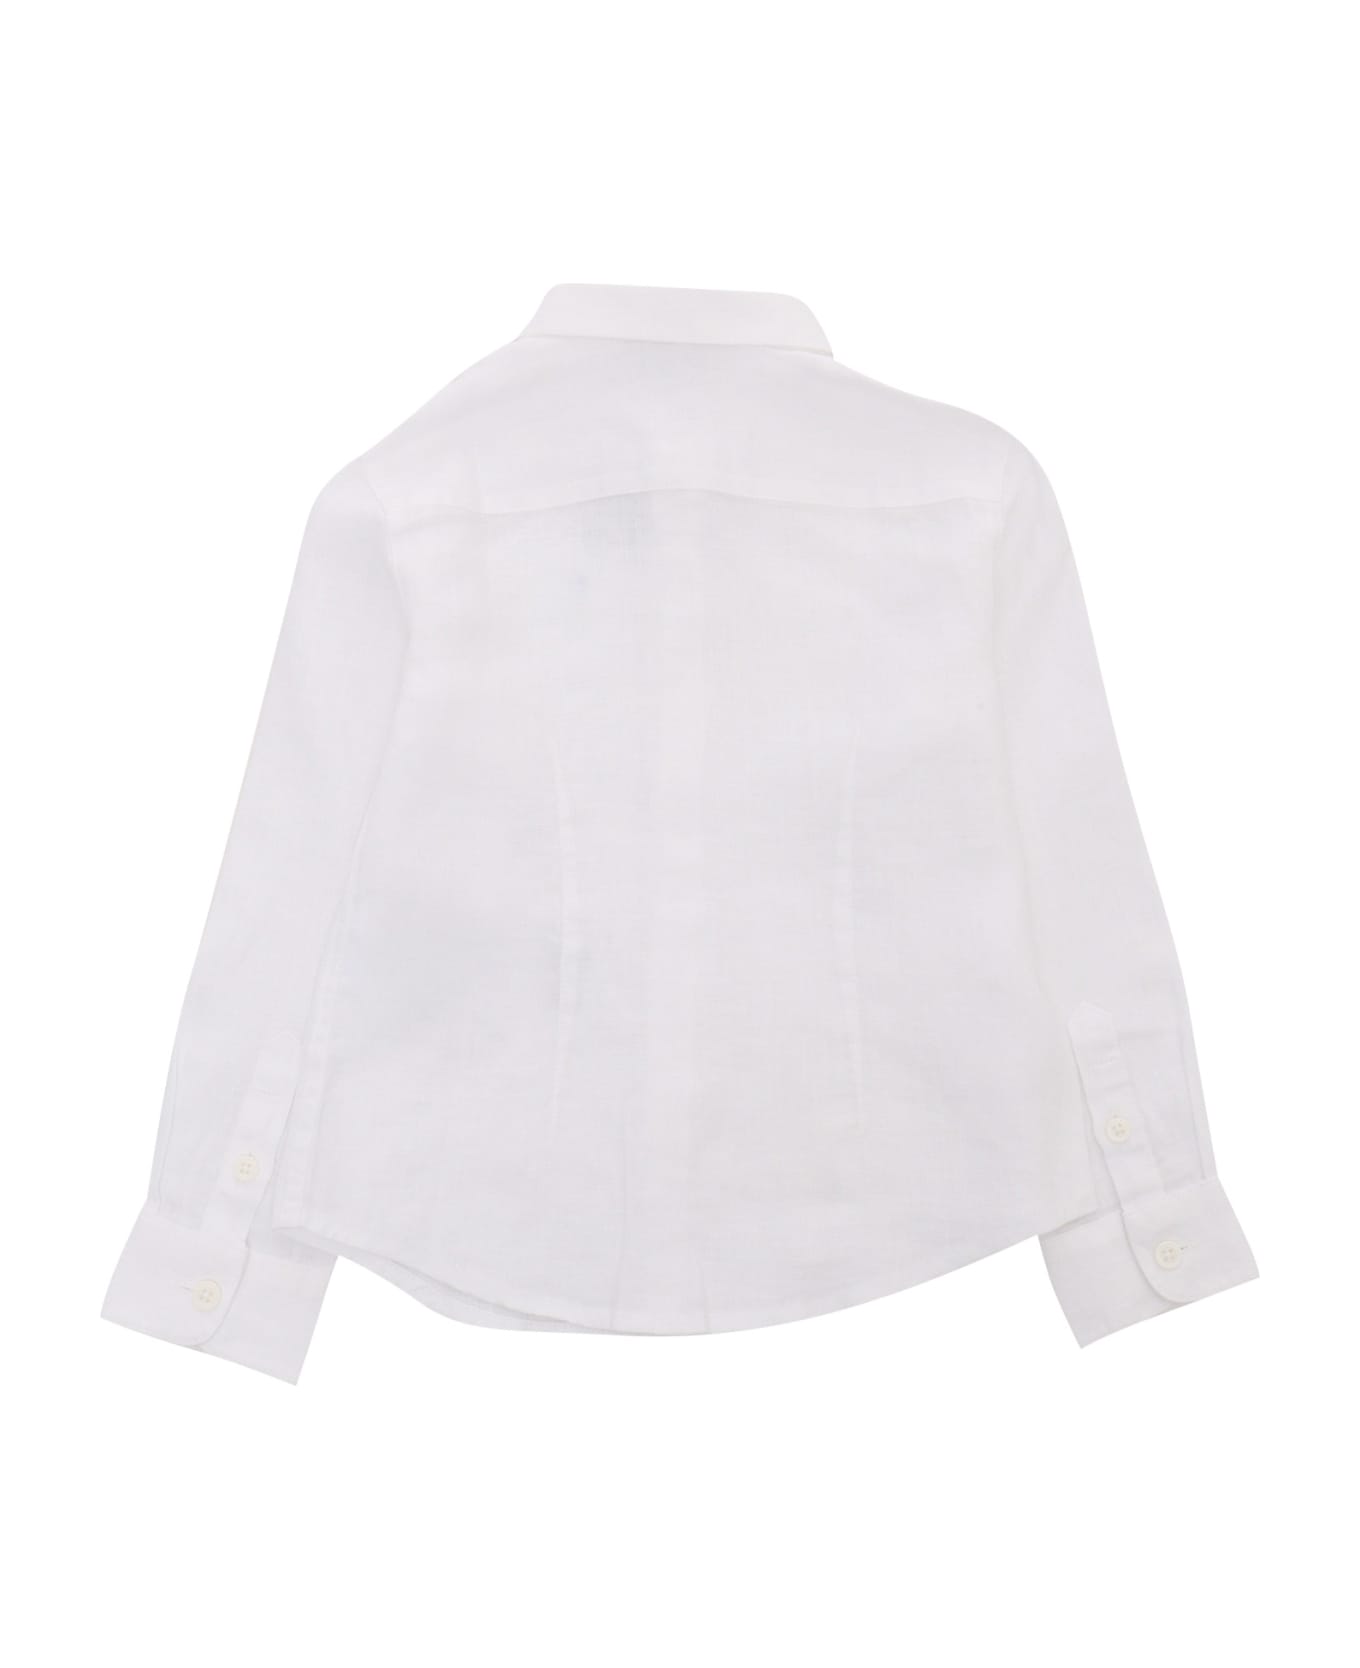 Emporio Armani White Shirt With Logo - WHITE